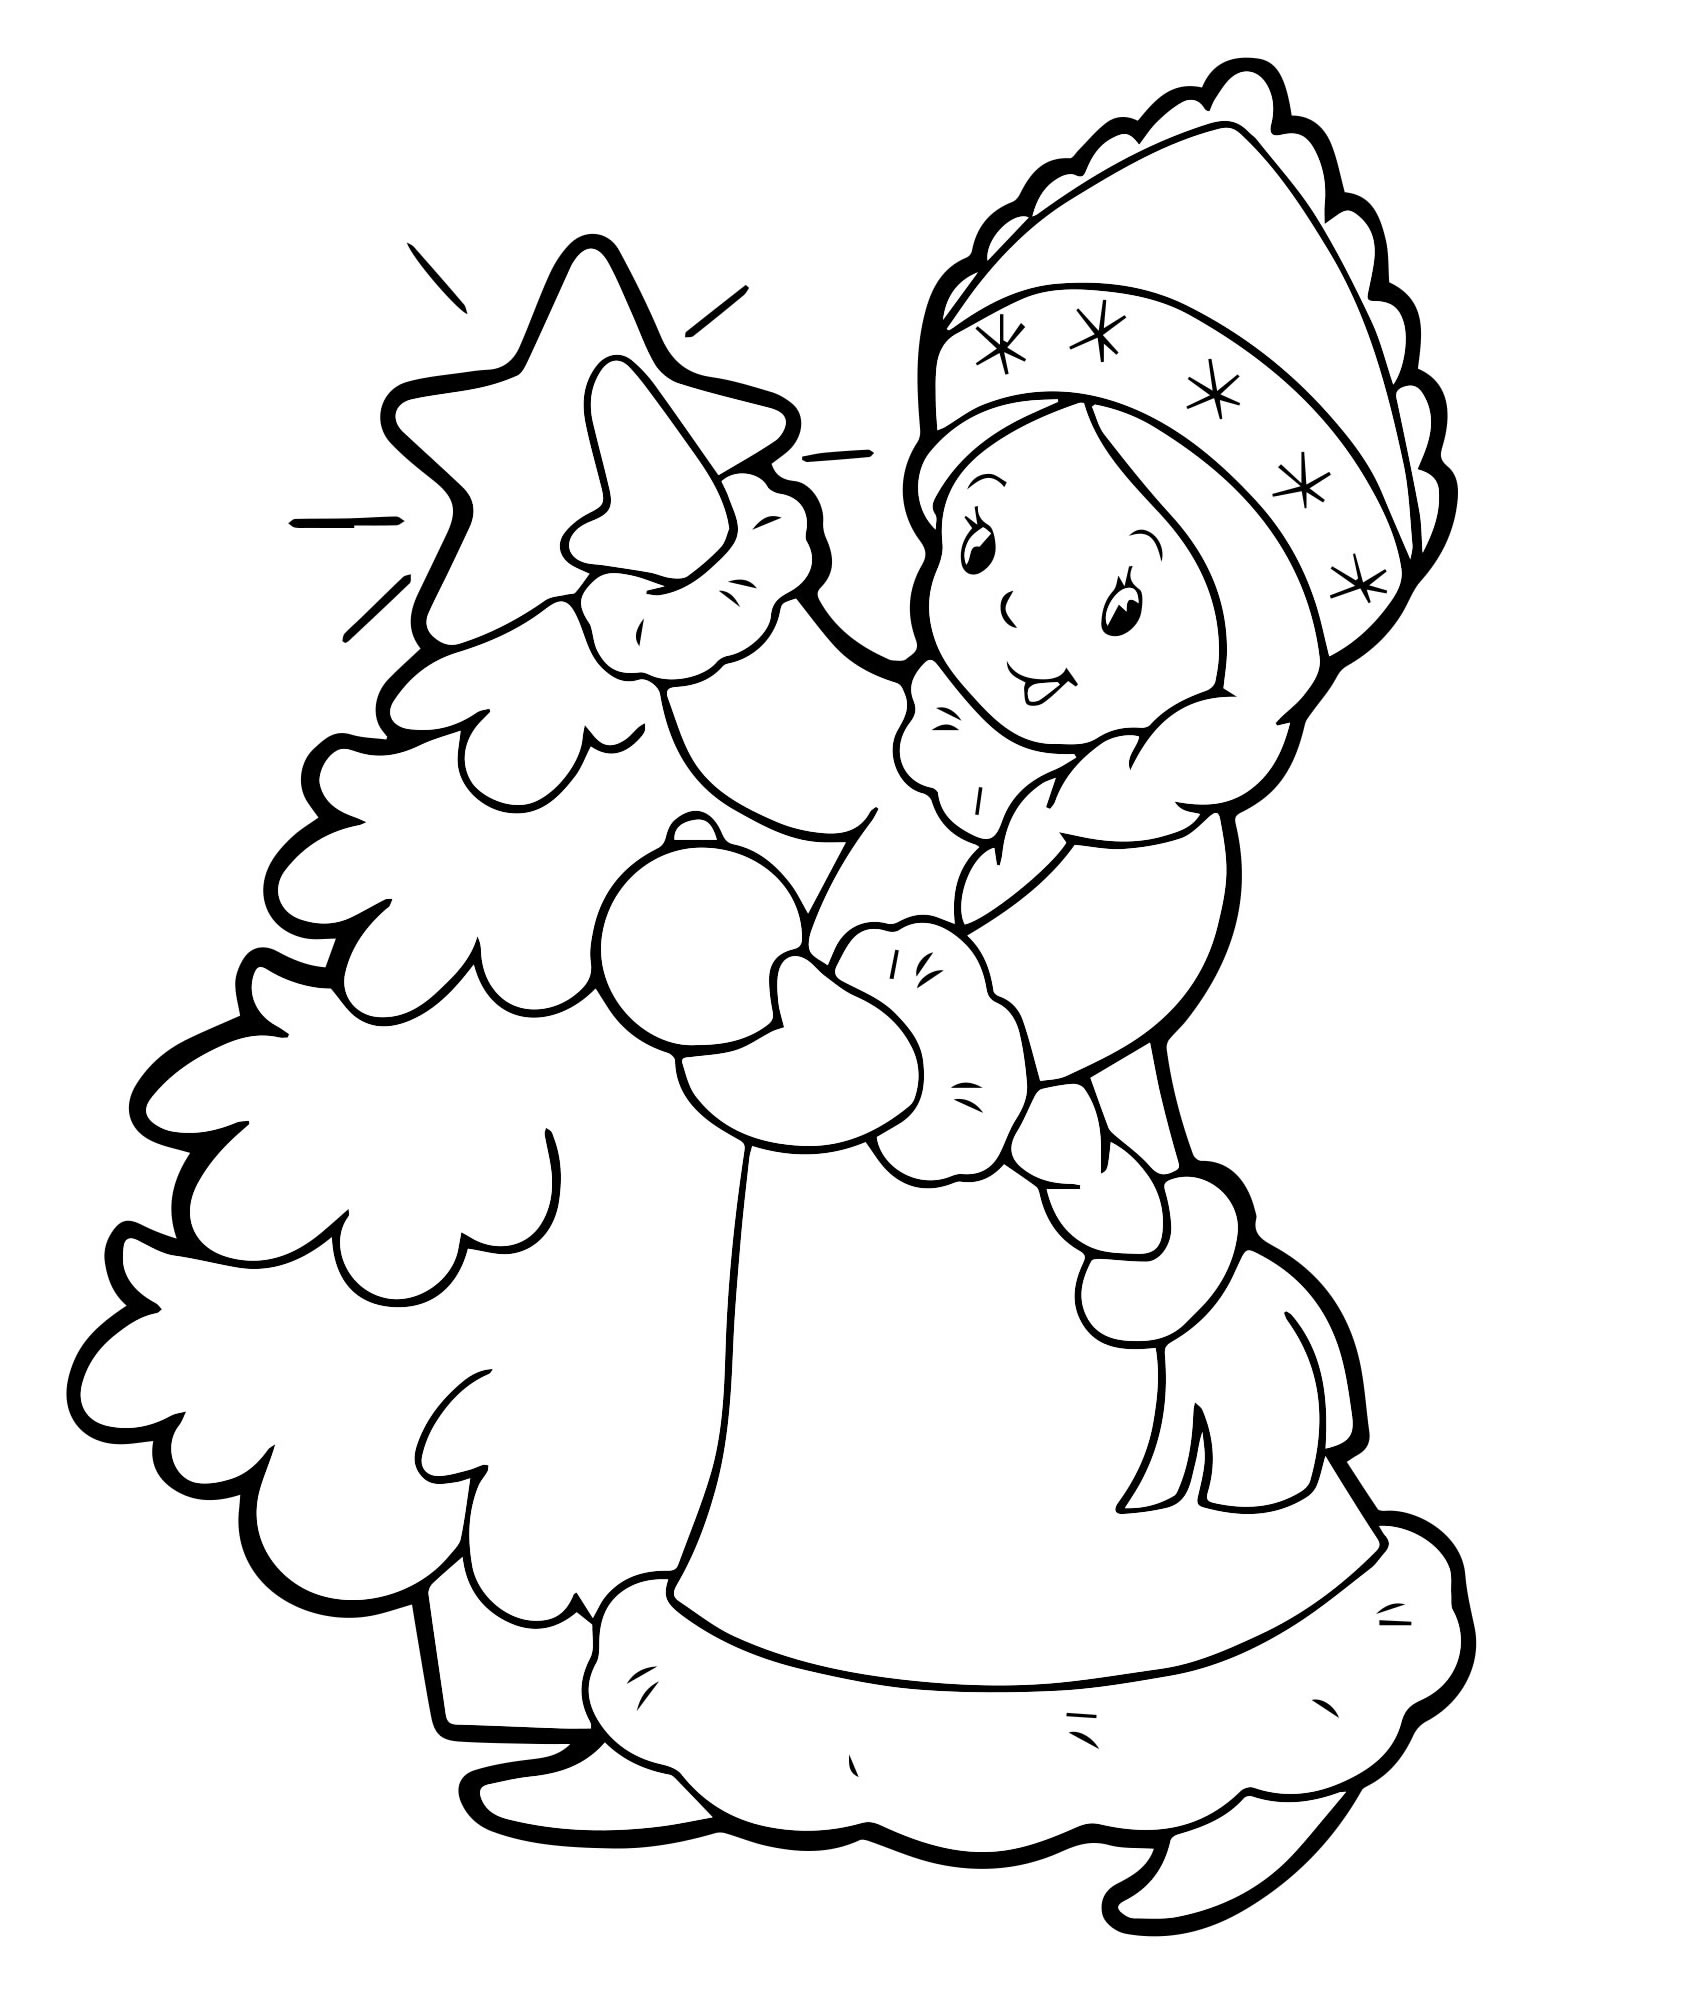 Иллюстрация к сказке снегурочка раскраска (49 фото)